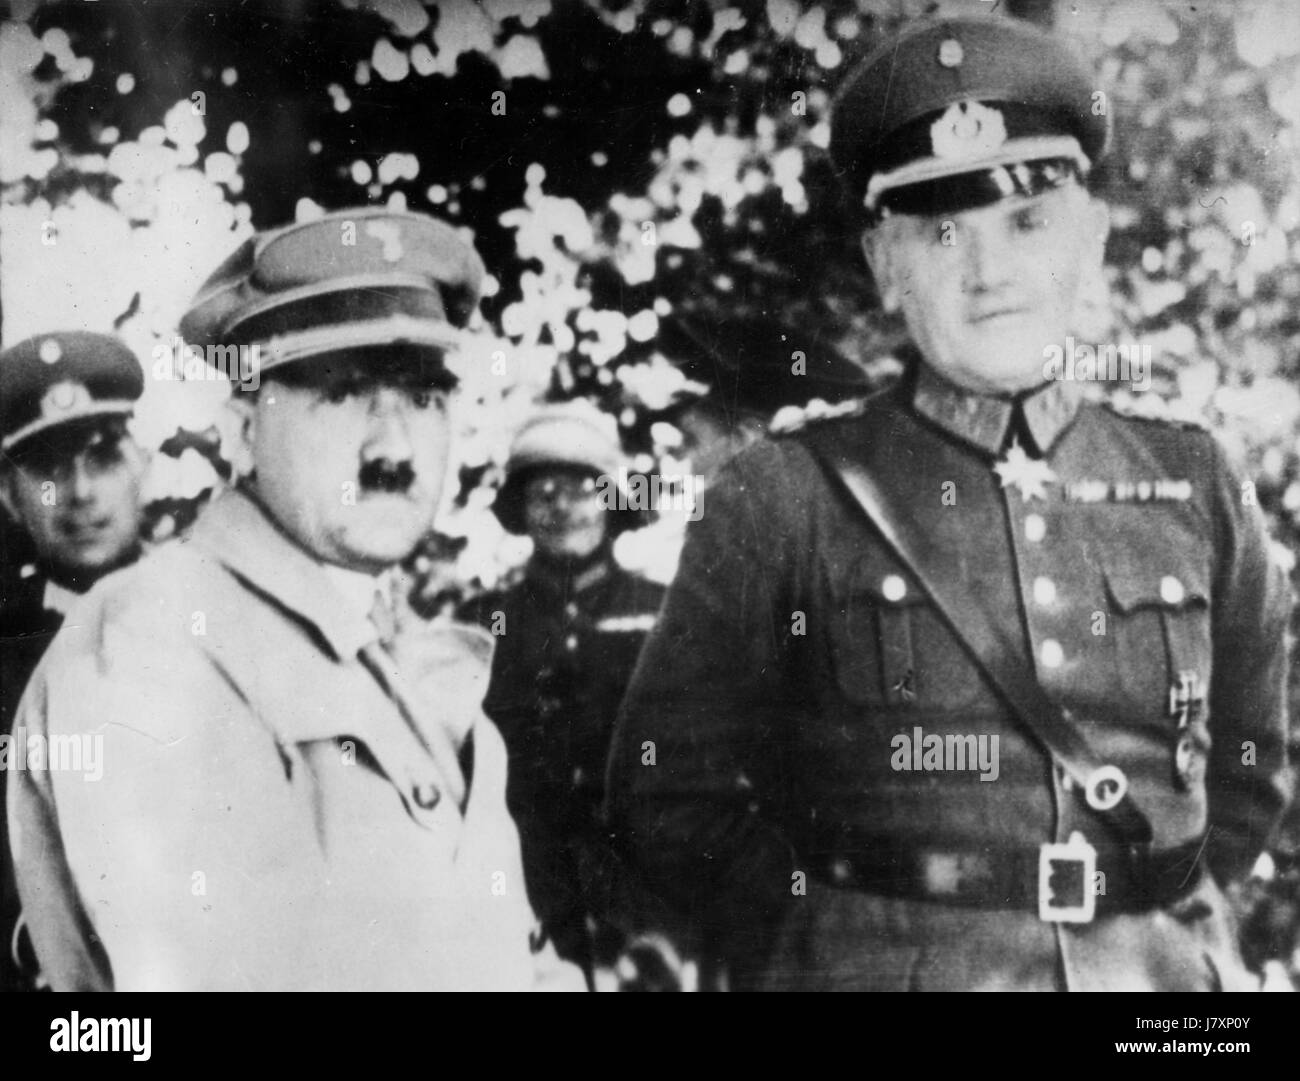 Le chancelier Adolf Hitler est accompagné du général Werner von Bromberg, ministre de la Défense, 3 août 1934. Ce n'est que la veille, le président allemand, Paul von Hindenburg, était mort. Le 3 août, avec le soutien de l'armée, Hitler est devenu président. Lors de cette cérémonie photographiée, le général von Bromberg a promis à l'armée de s'engager à Hitler et à von Bomberg [selon la légende de cette photo], "A Ordonné à chaque soldat de s'engager dans sa loyauté et sa vie à Hitler. Pour voir mes autres images millésimes WW II, recherchez: Prestor millésime WW II Banque D'Images